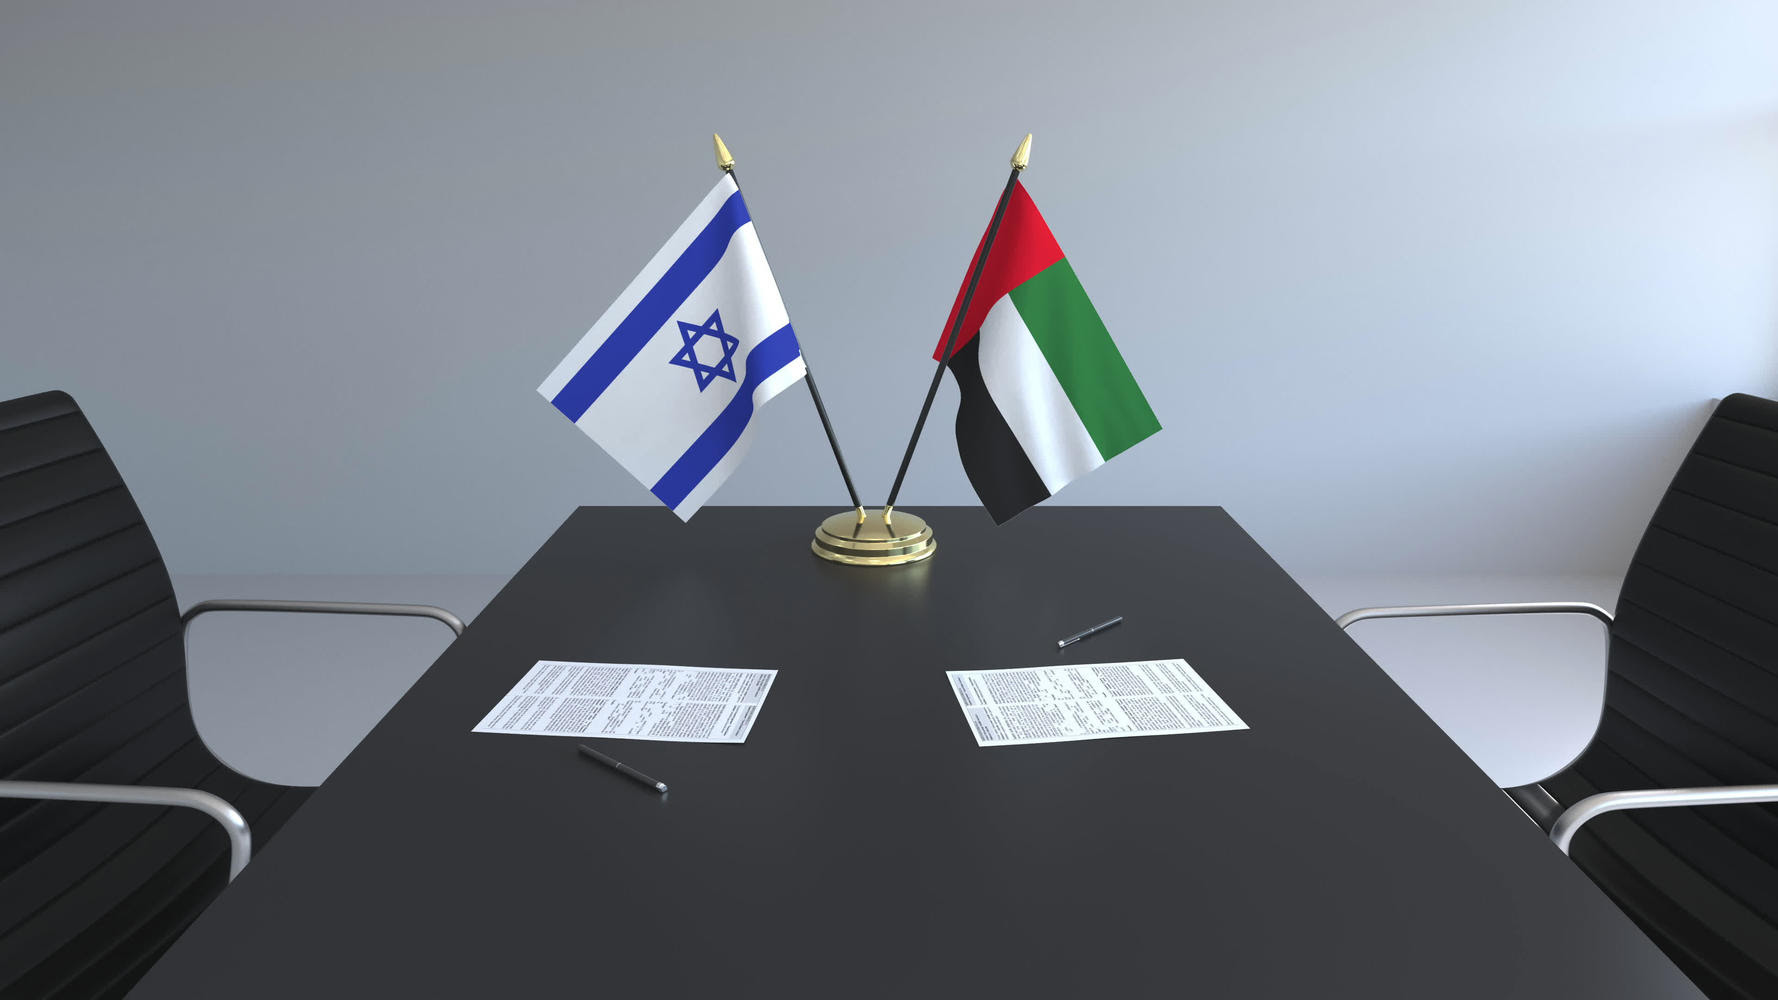 Nouvelle étape vers la normalisation: les Emirats Arabes Unis abrogent la loi de boycott d'Israël - © Infos-Israel.News - Sté Alyaexpress-News